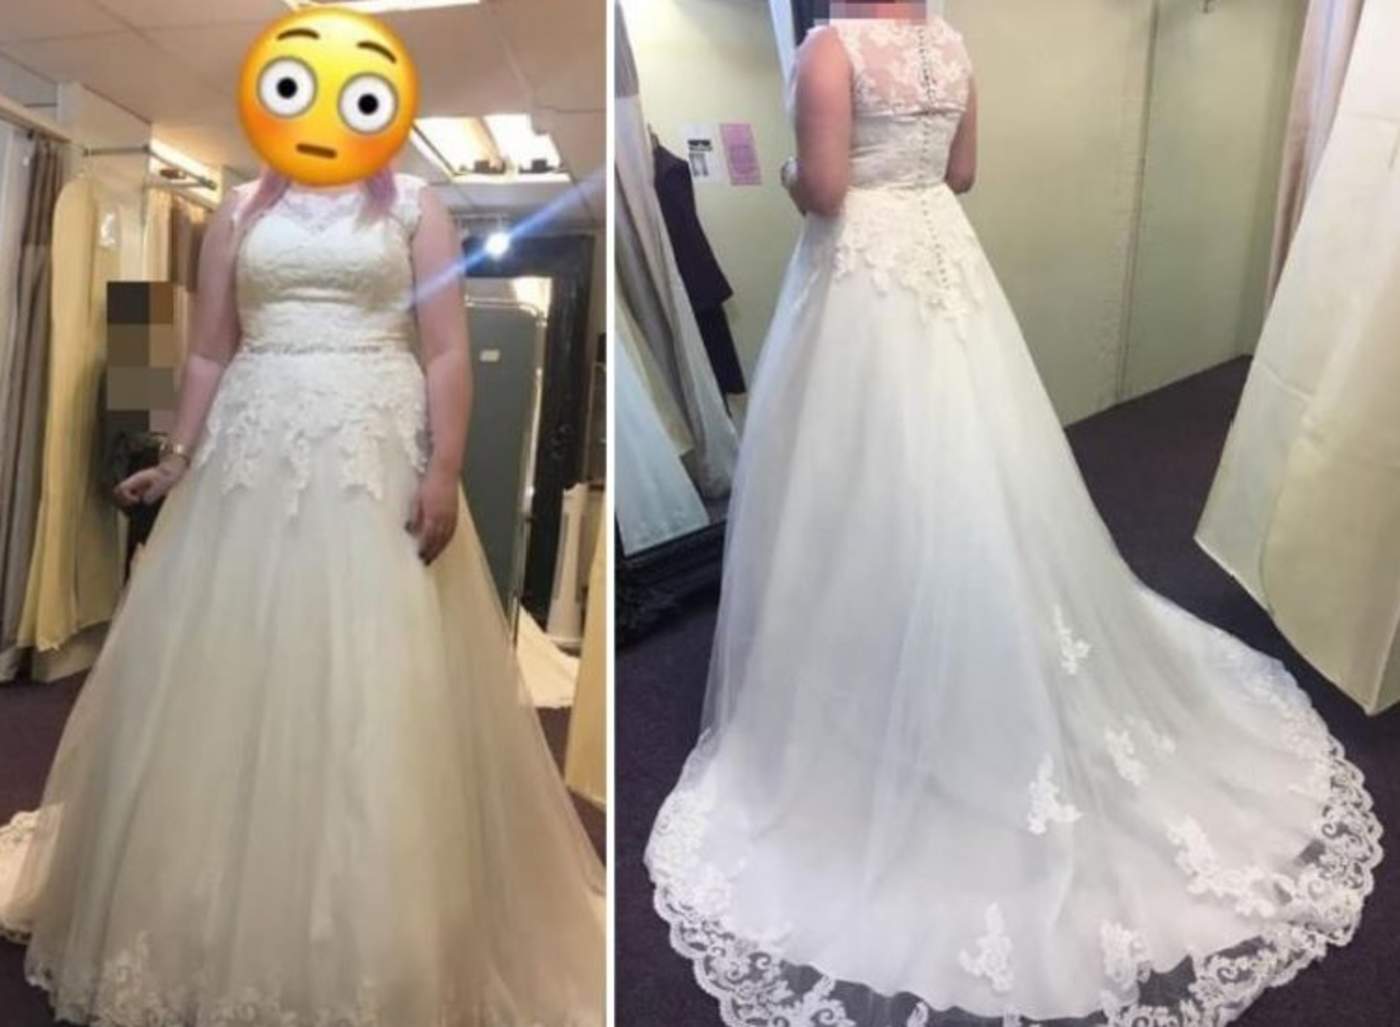 La mujer se casó en 2017 y ahora no quiere saber ni del vestido ni de su exesposo. (INTERNET)